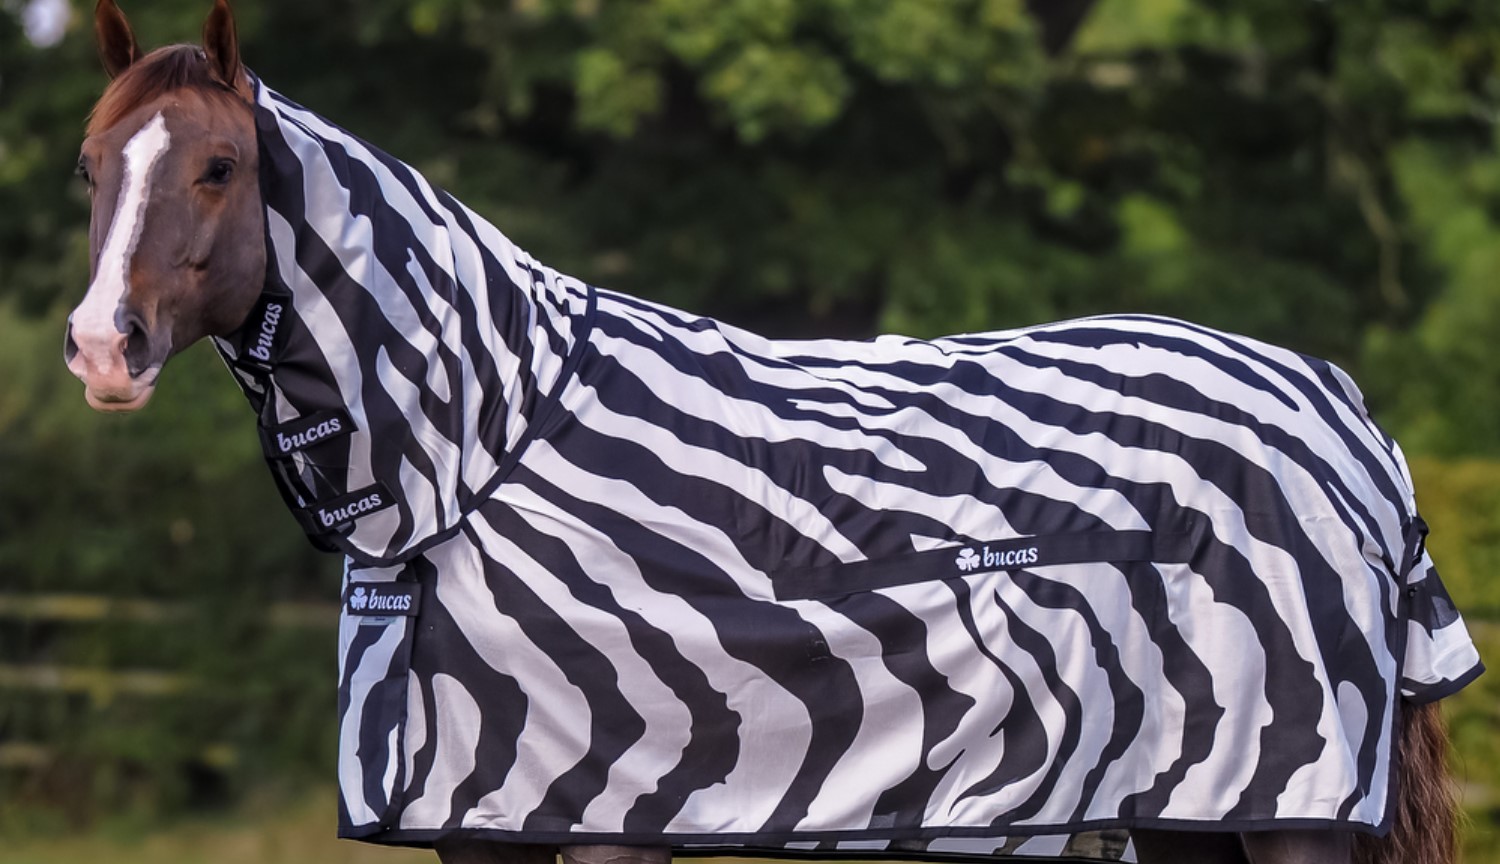 Por que os cientistas vestiram terno de zebra em comum cavalo? Em nome da ciência!